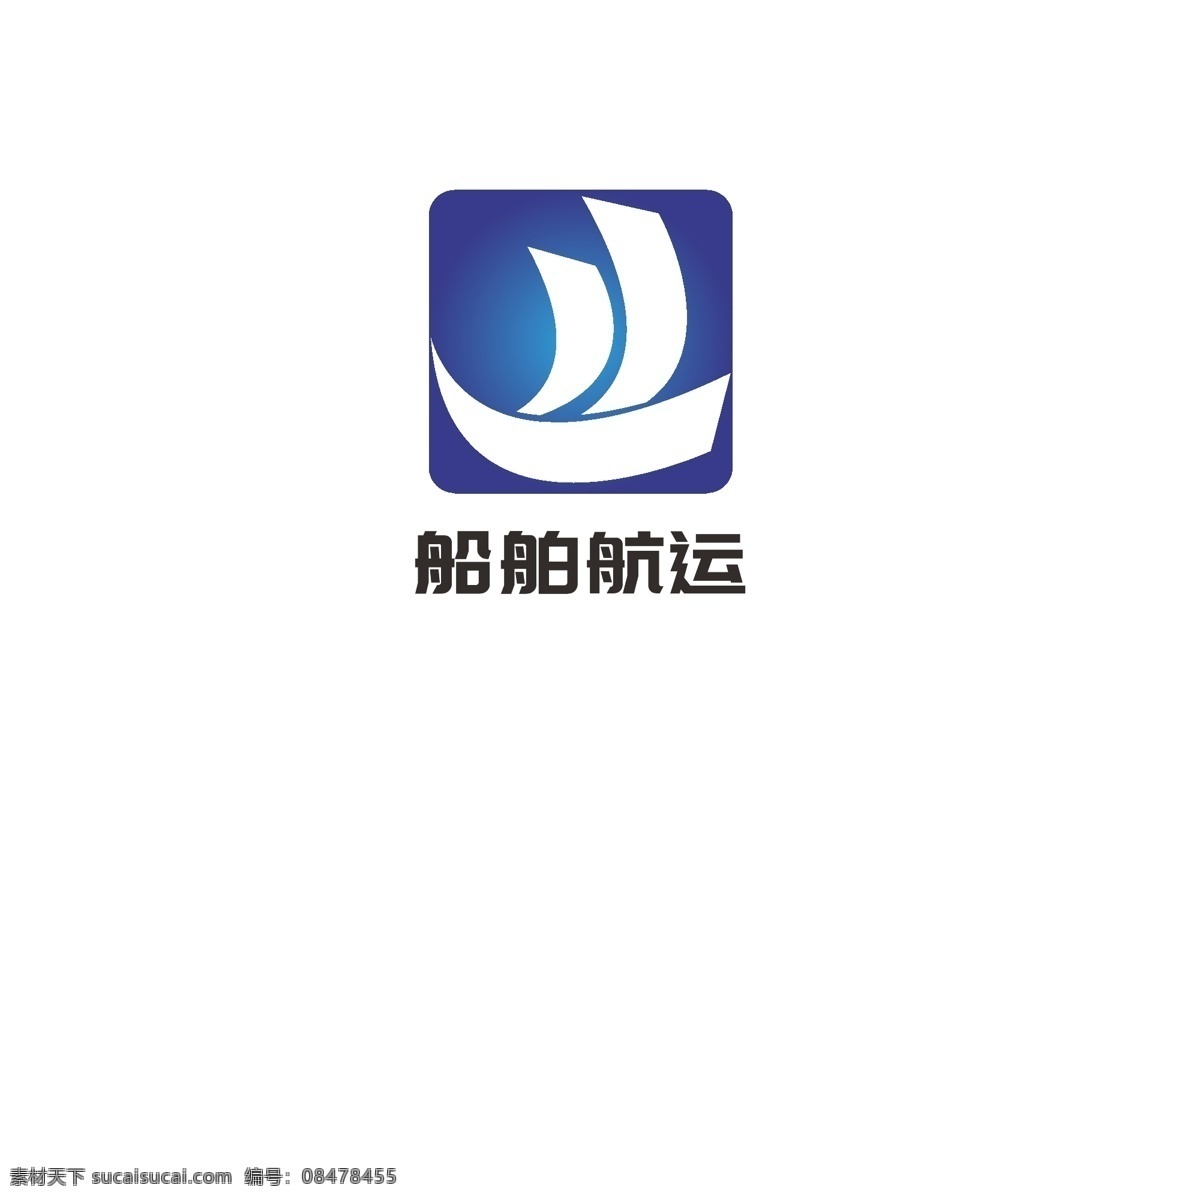 船舶 航运 logo 旅行 发展 轮船 帆船 一帆风顺 传播 航行 船只